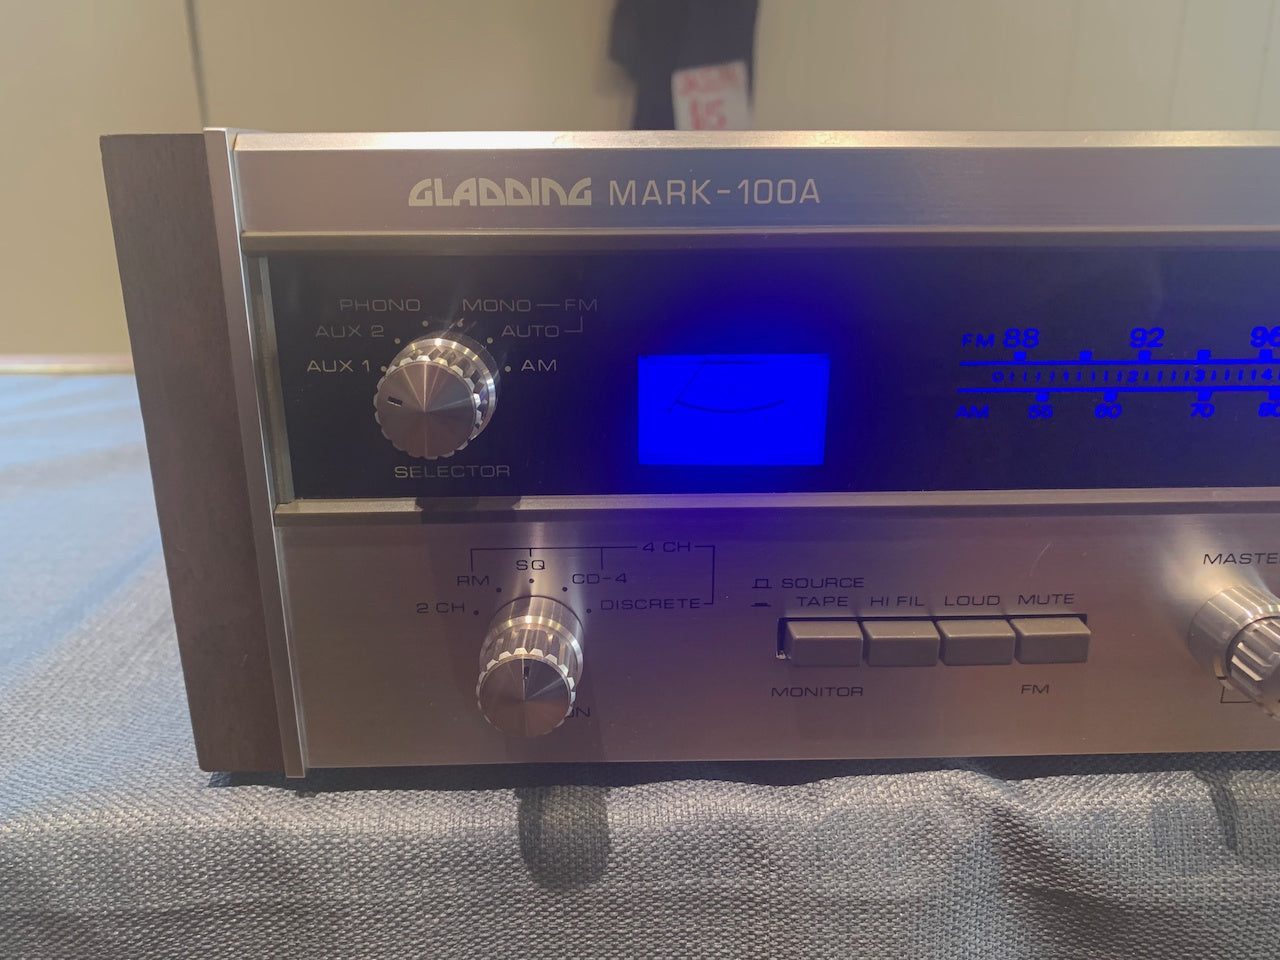 Gladding ( Claricon ) Mark 100 Stereo Receiver